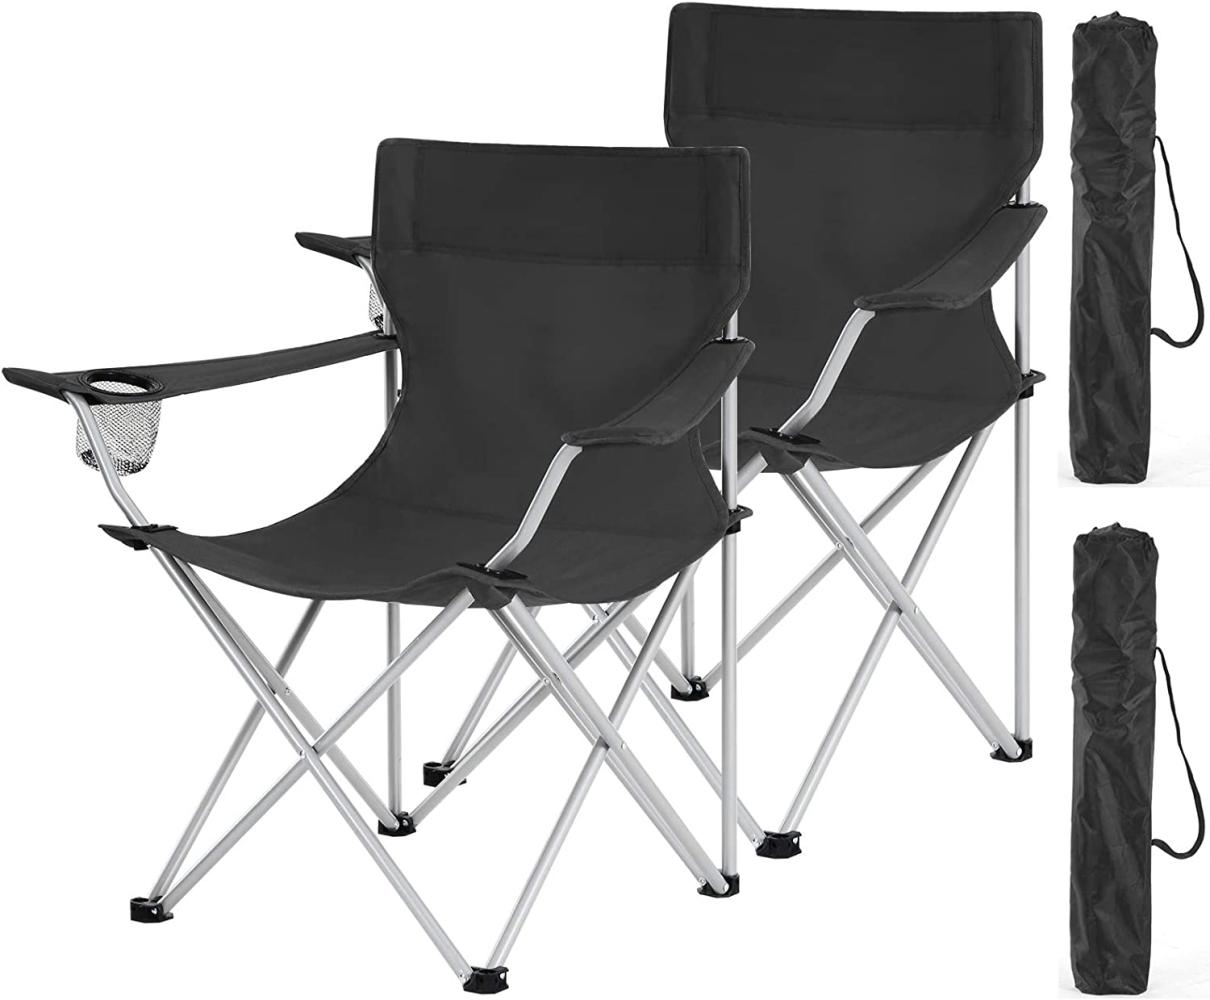 Campingstühle, 2er Set, Klappstühle, Outdoor-Stühle mit Armlehnen und Getränkehalter, stabiles Gestell, bis 120kg belastbar, Schwarz GCB01BK Bild 1